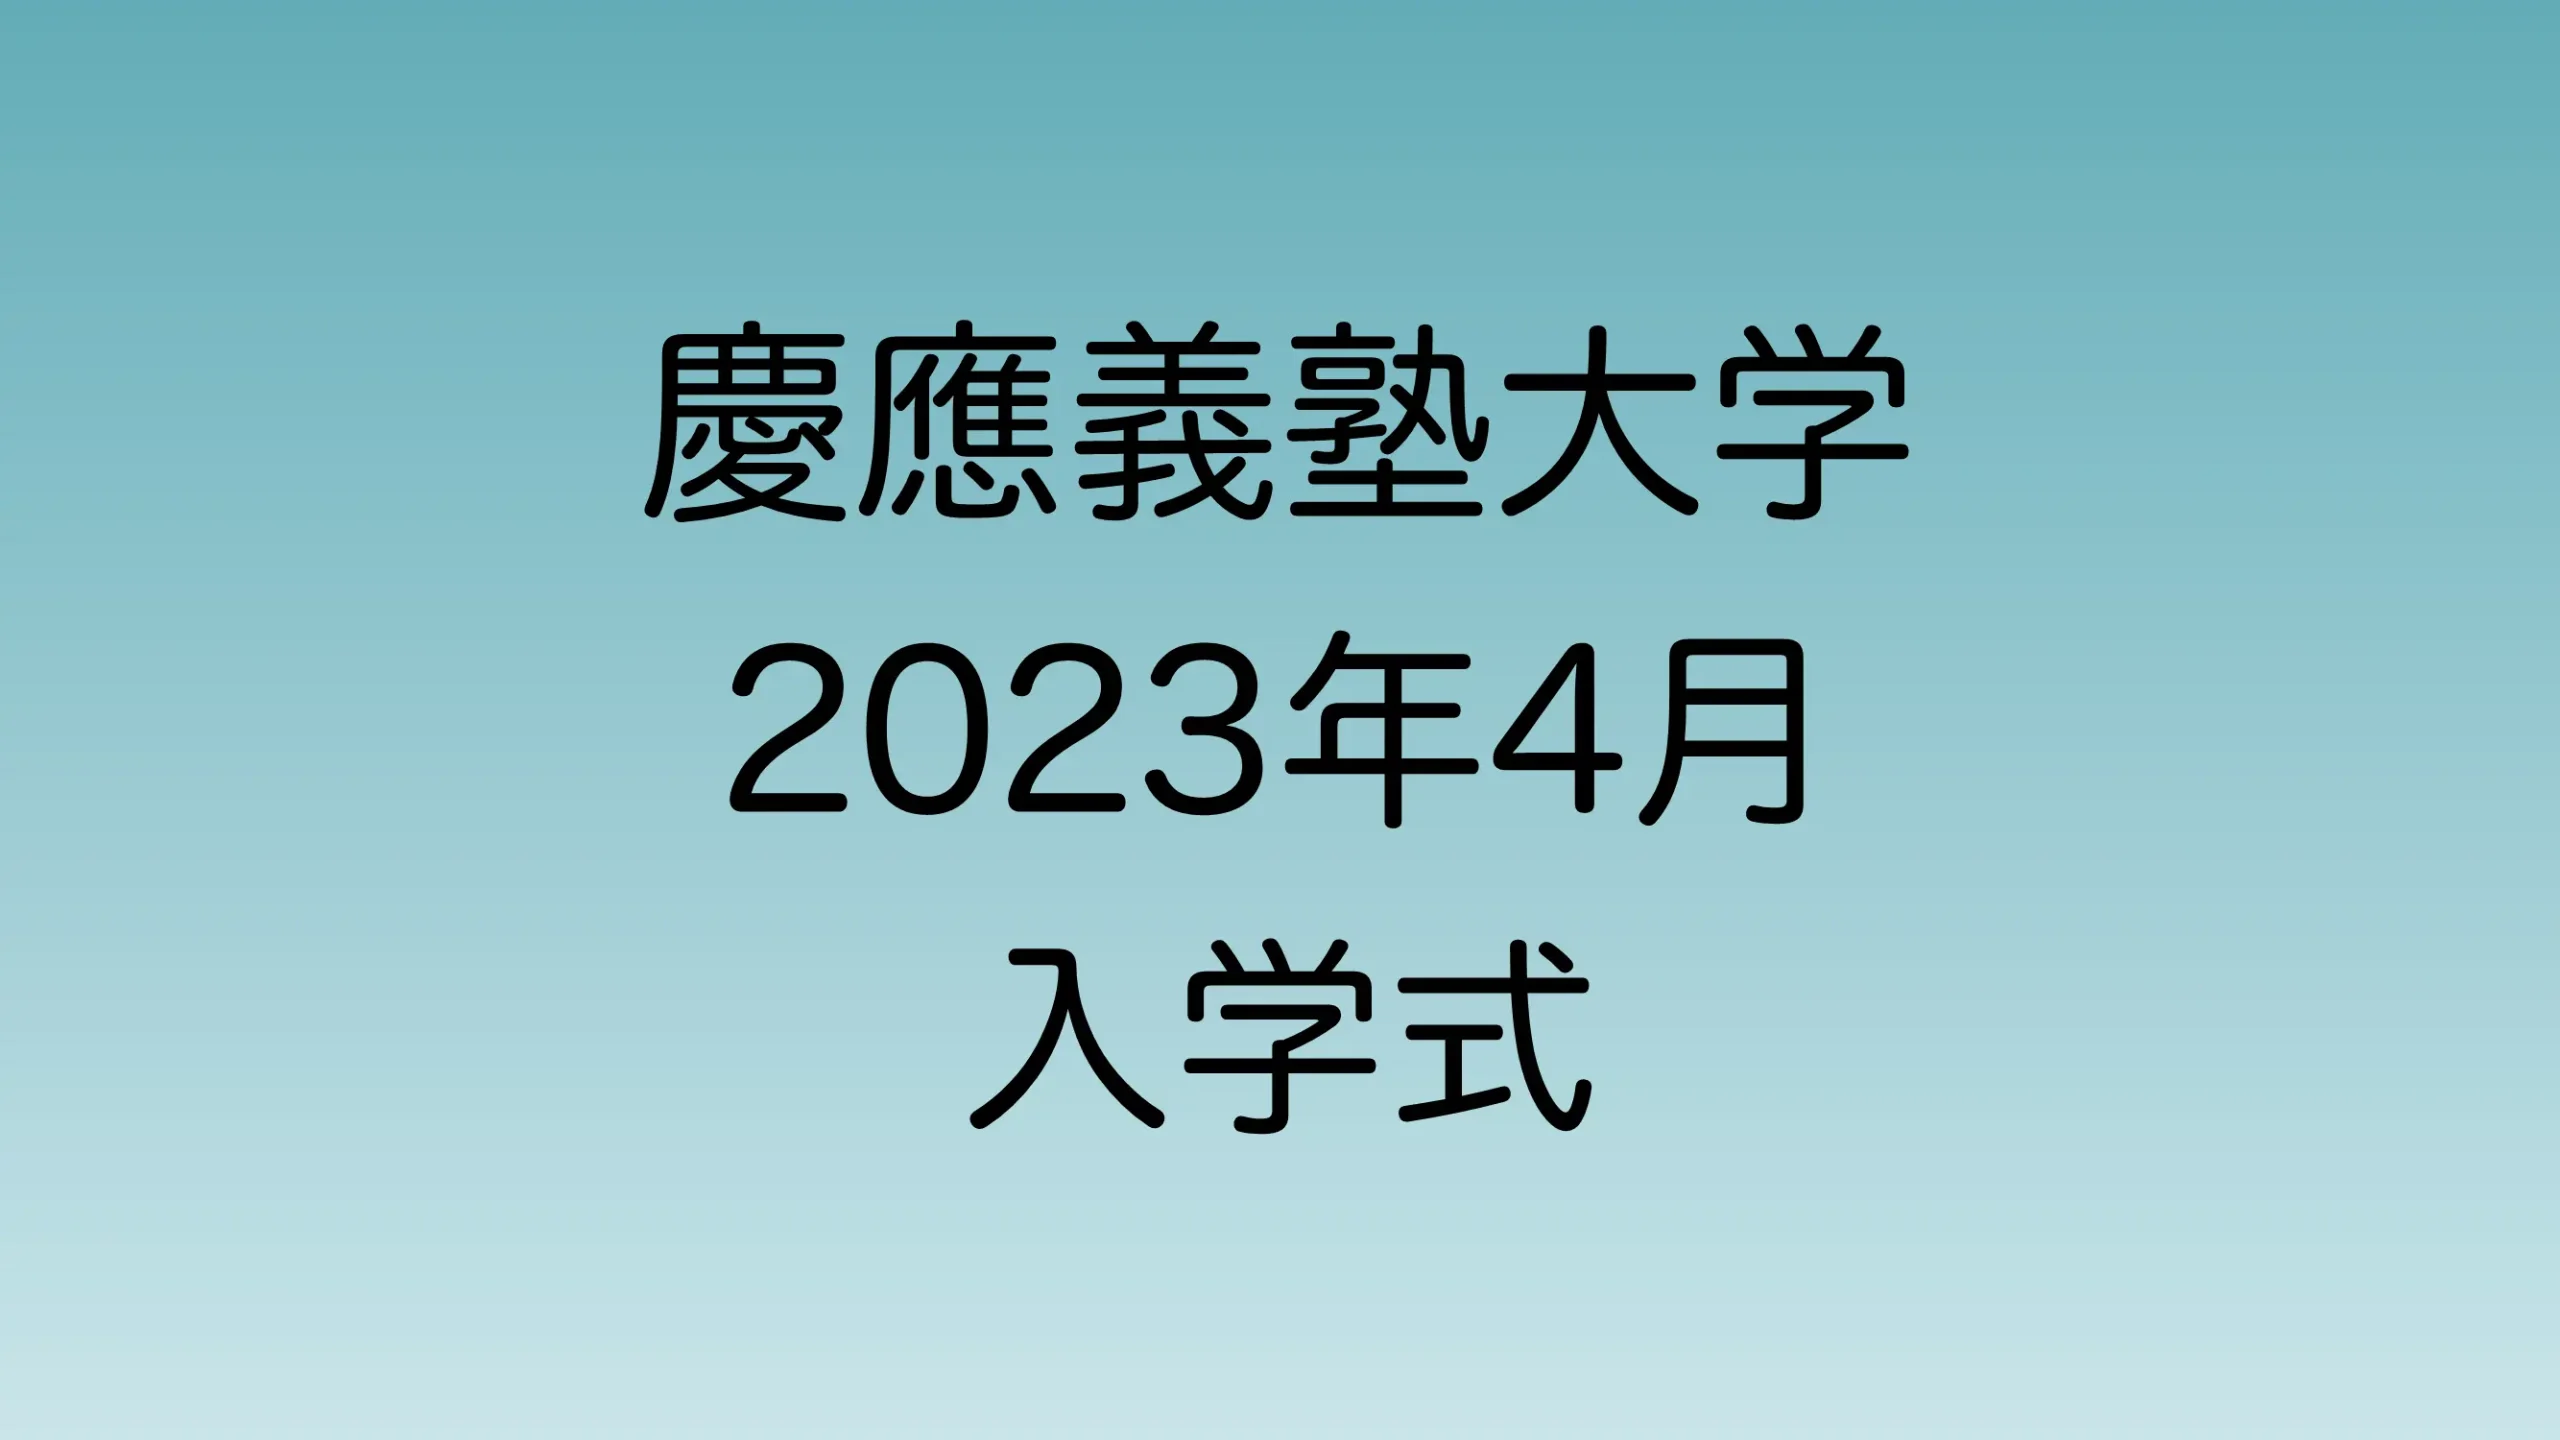 2023年4月の慶應義塾大学入学式について解説